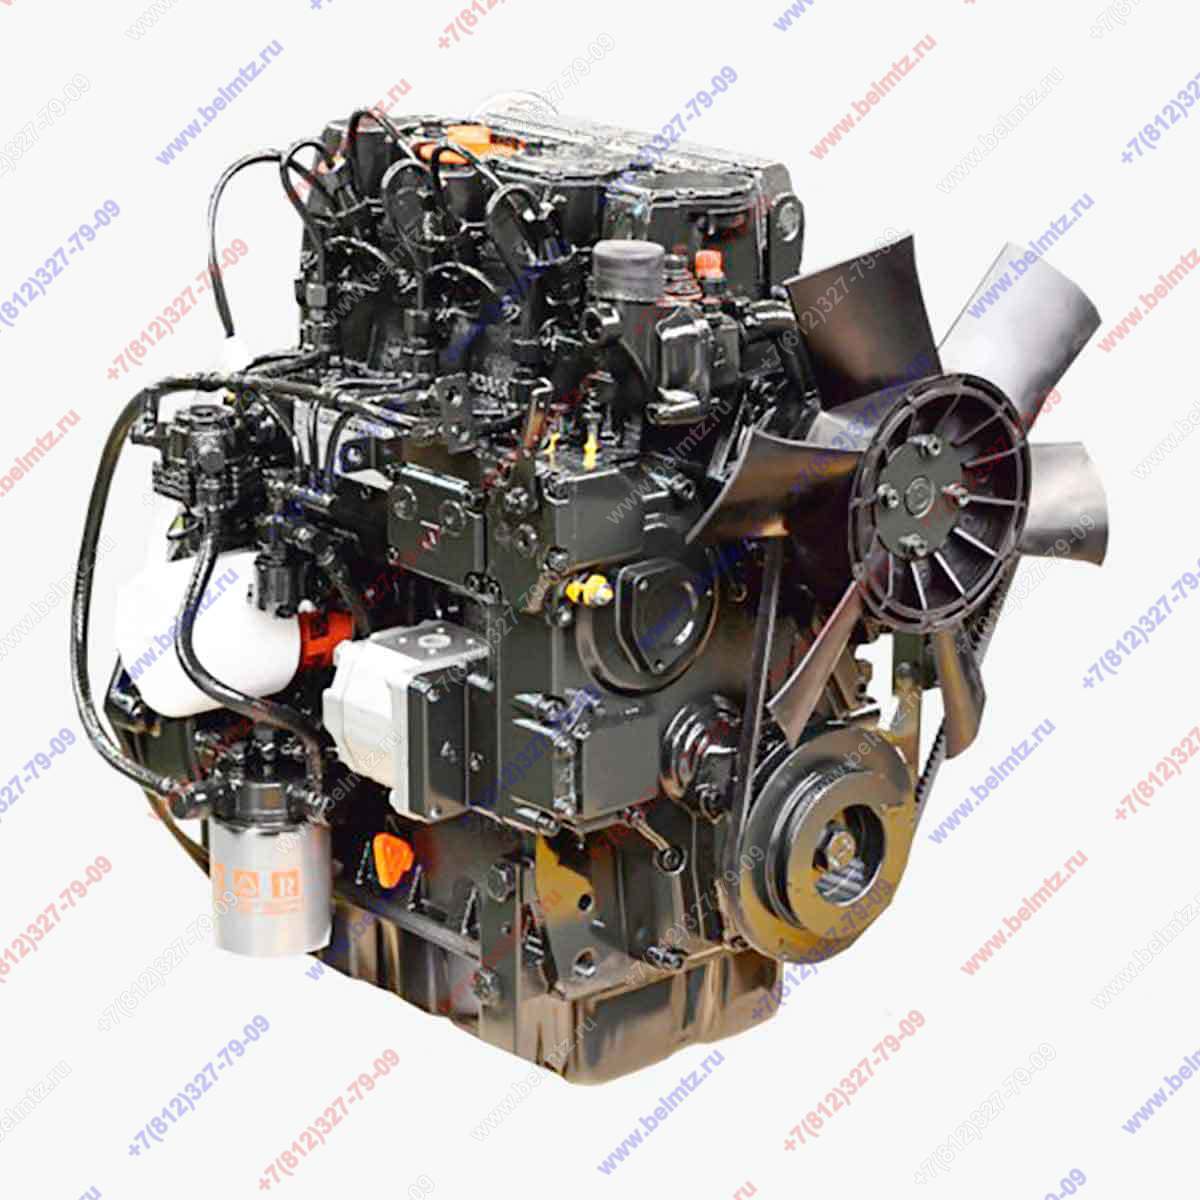 Двигатель ламборджини мтз. Двигатель Lombardini LDW 1603/b3 (3-х цилиндр., 1649 см3, 40. ДВС МТЗ 320 Lombardini. Двигатель Lombardini LDW 1603 /b3. Ldw1603/b3.